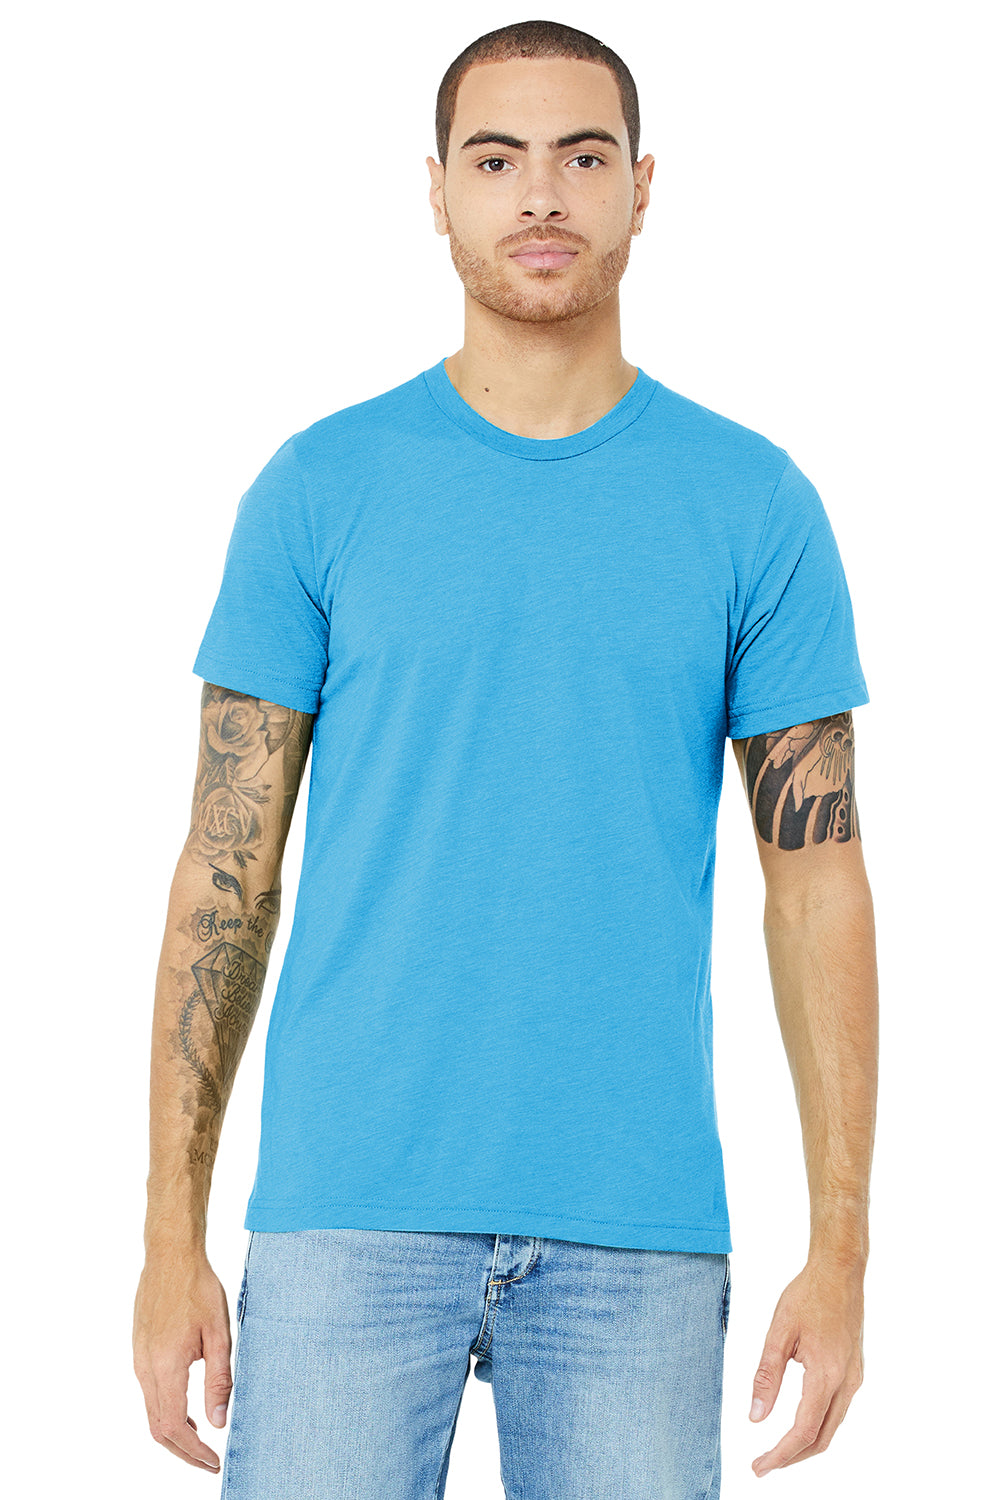 Bella + Canvas BC3413/3413C/3413 Mens Short Sleeve Crewneck T-Shirt Aqua Blue Model Front